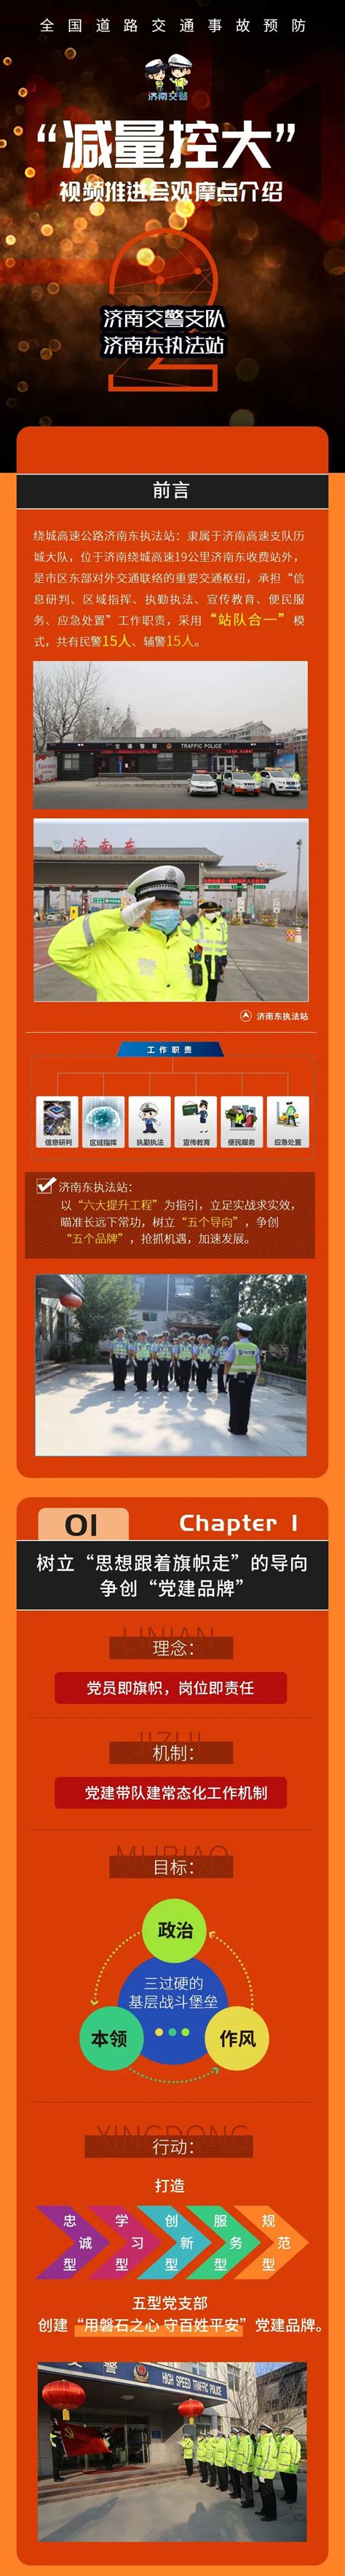 南京交警公众号怎么申请学法免分- 本地宝